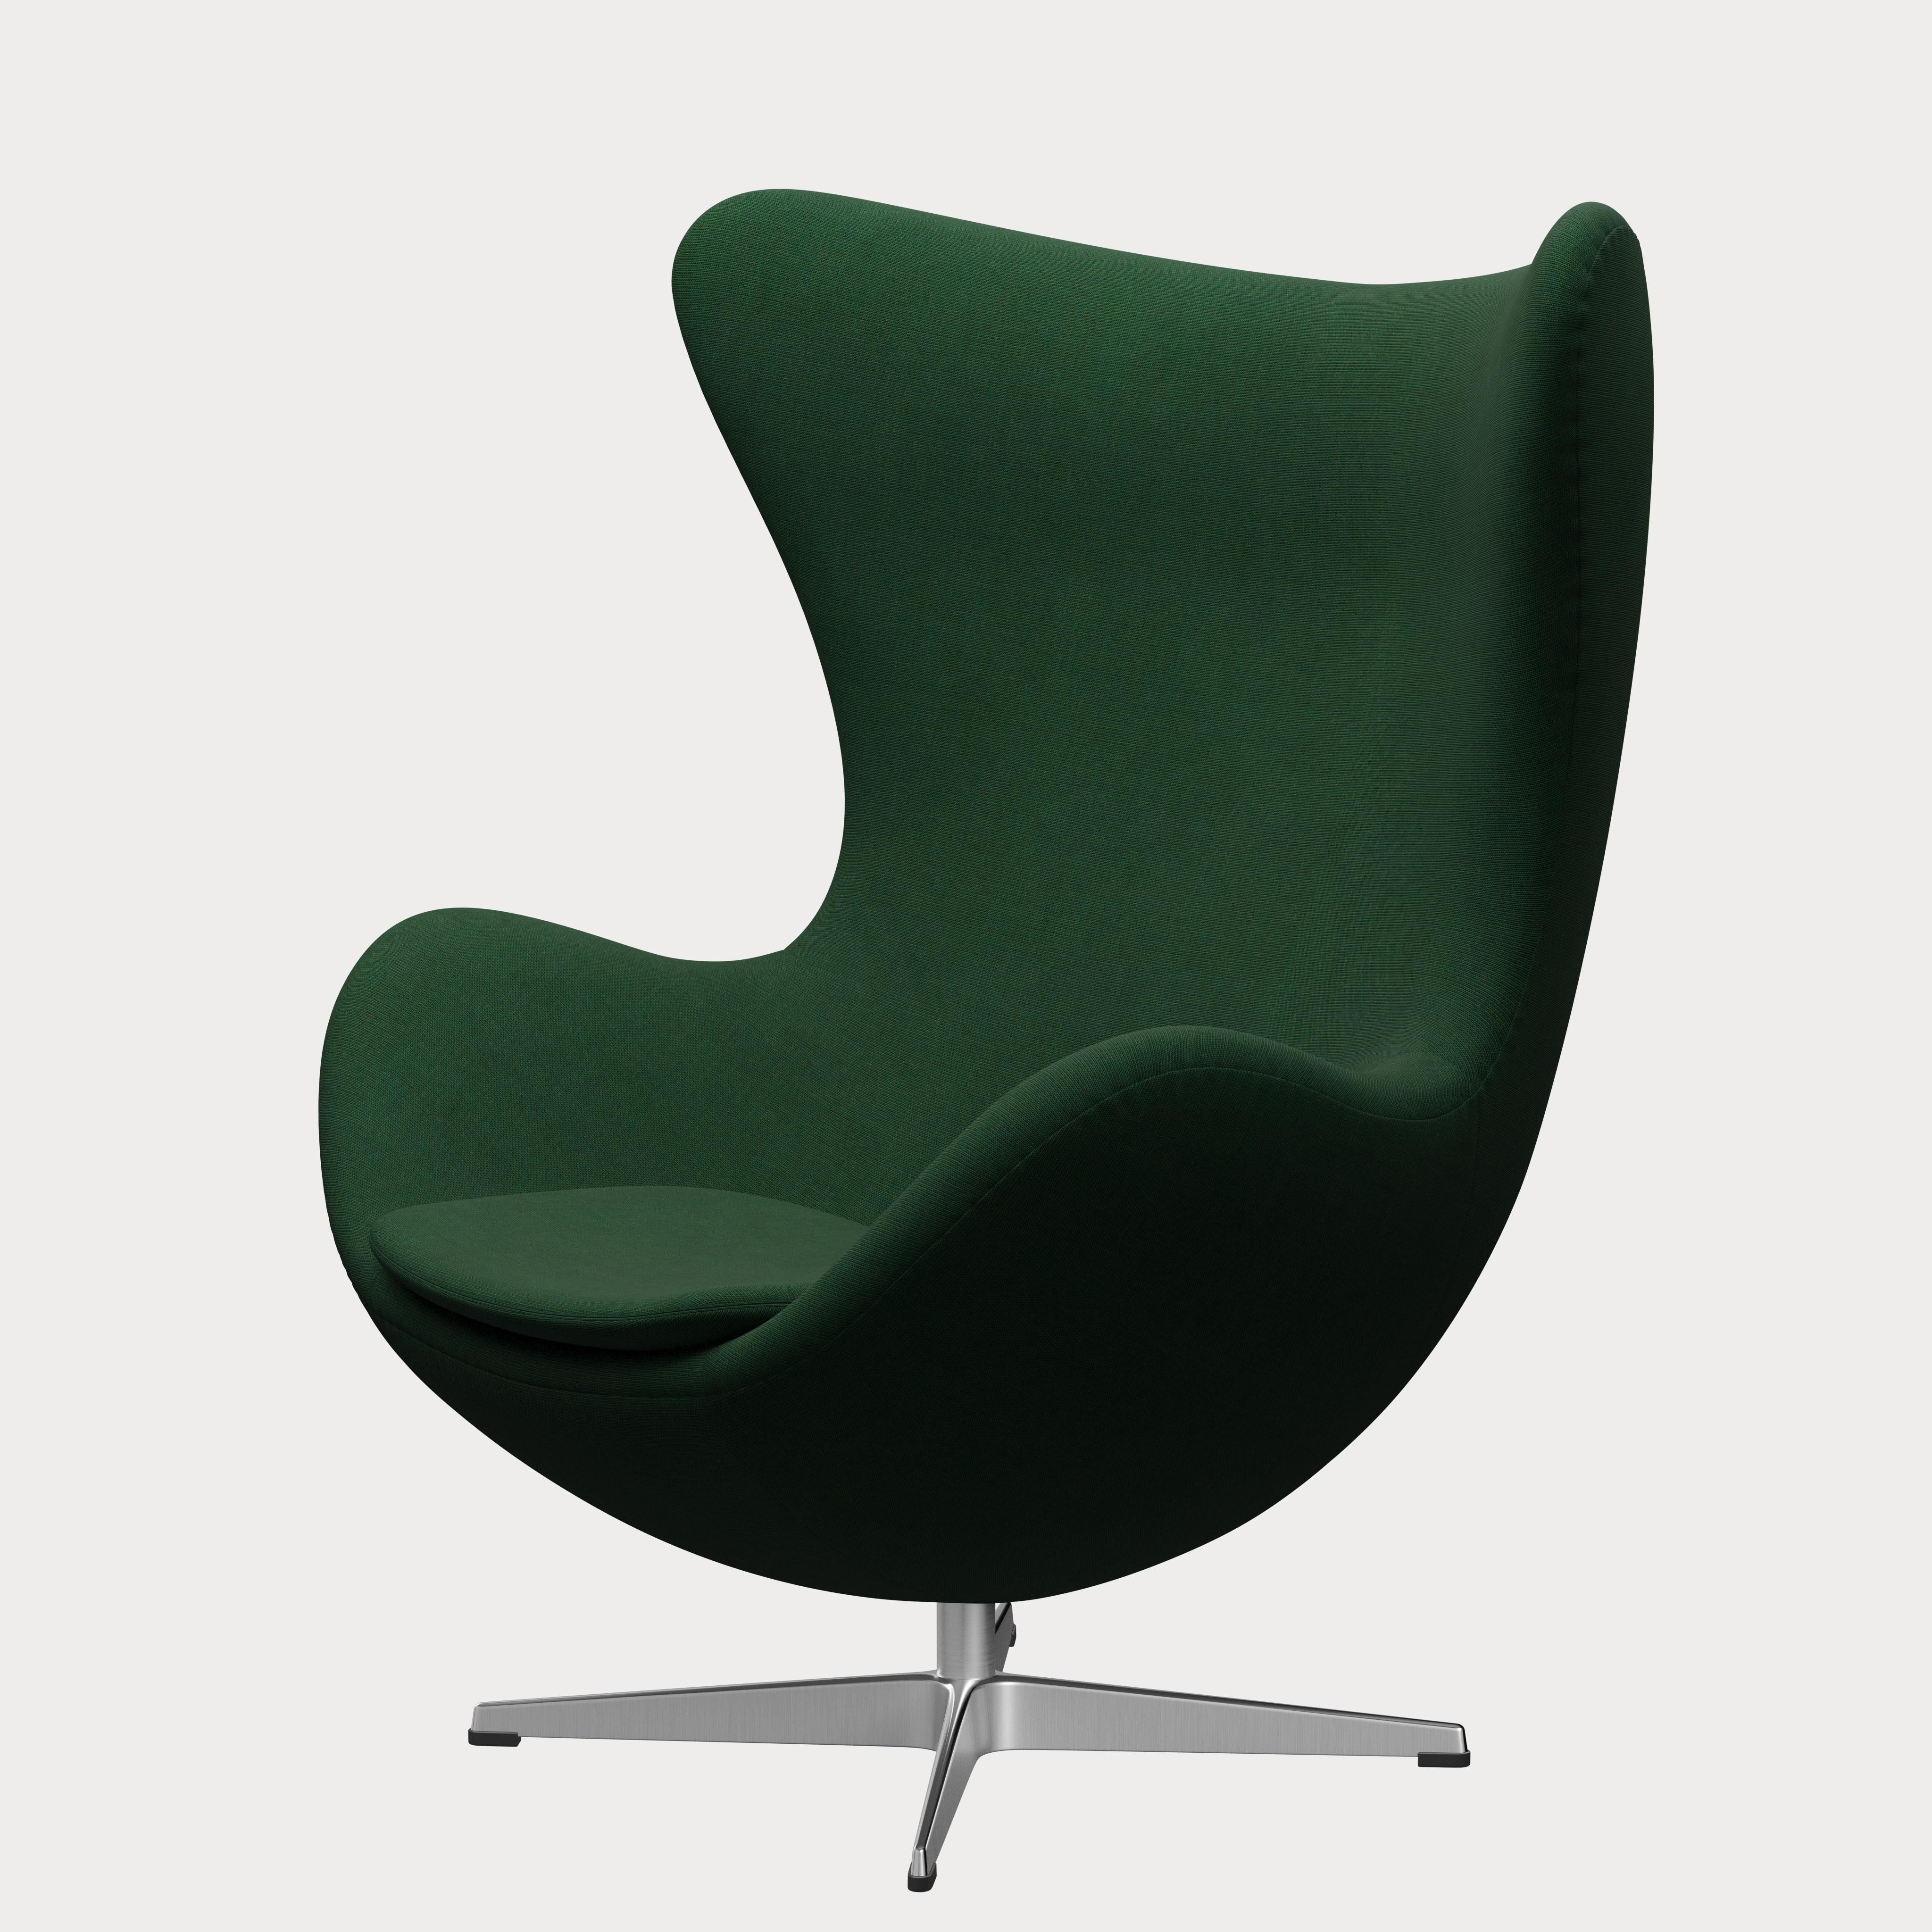 Arne Jacobsen 'Egg' Chair for Fritz Hansen in Fabric Upholstery (Cat. 1) For Sale 1